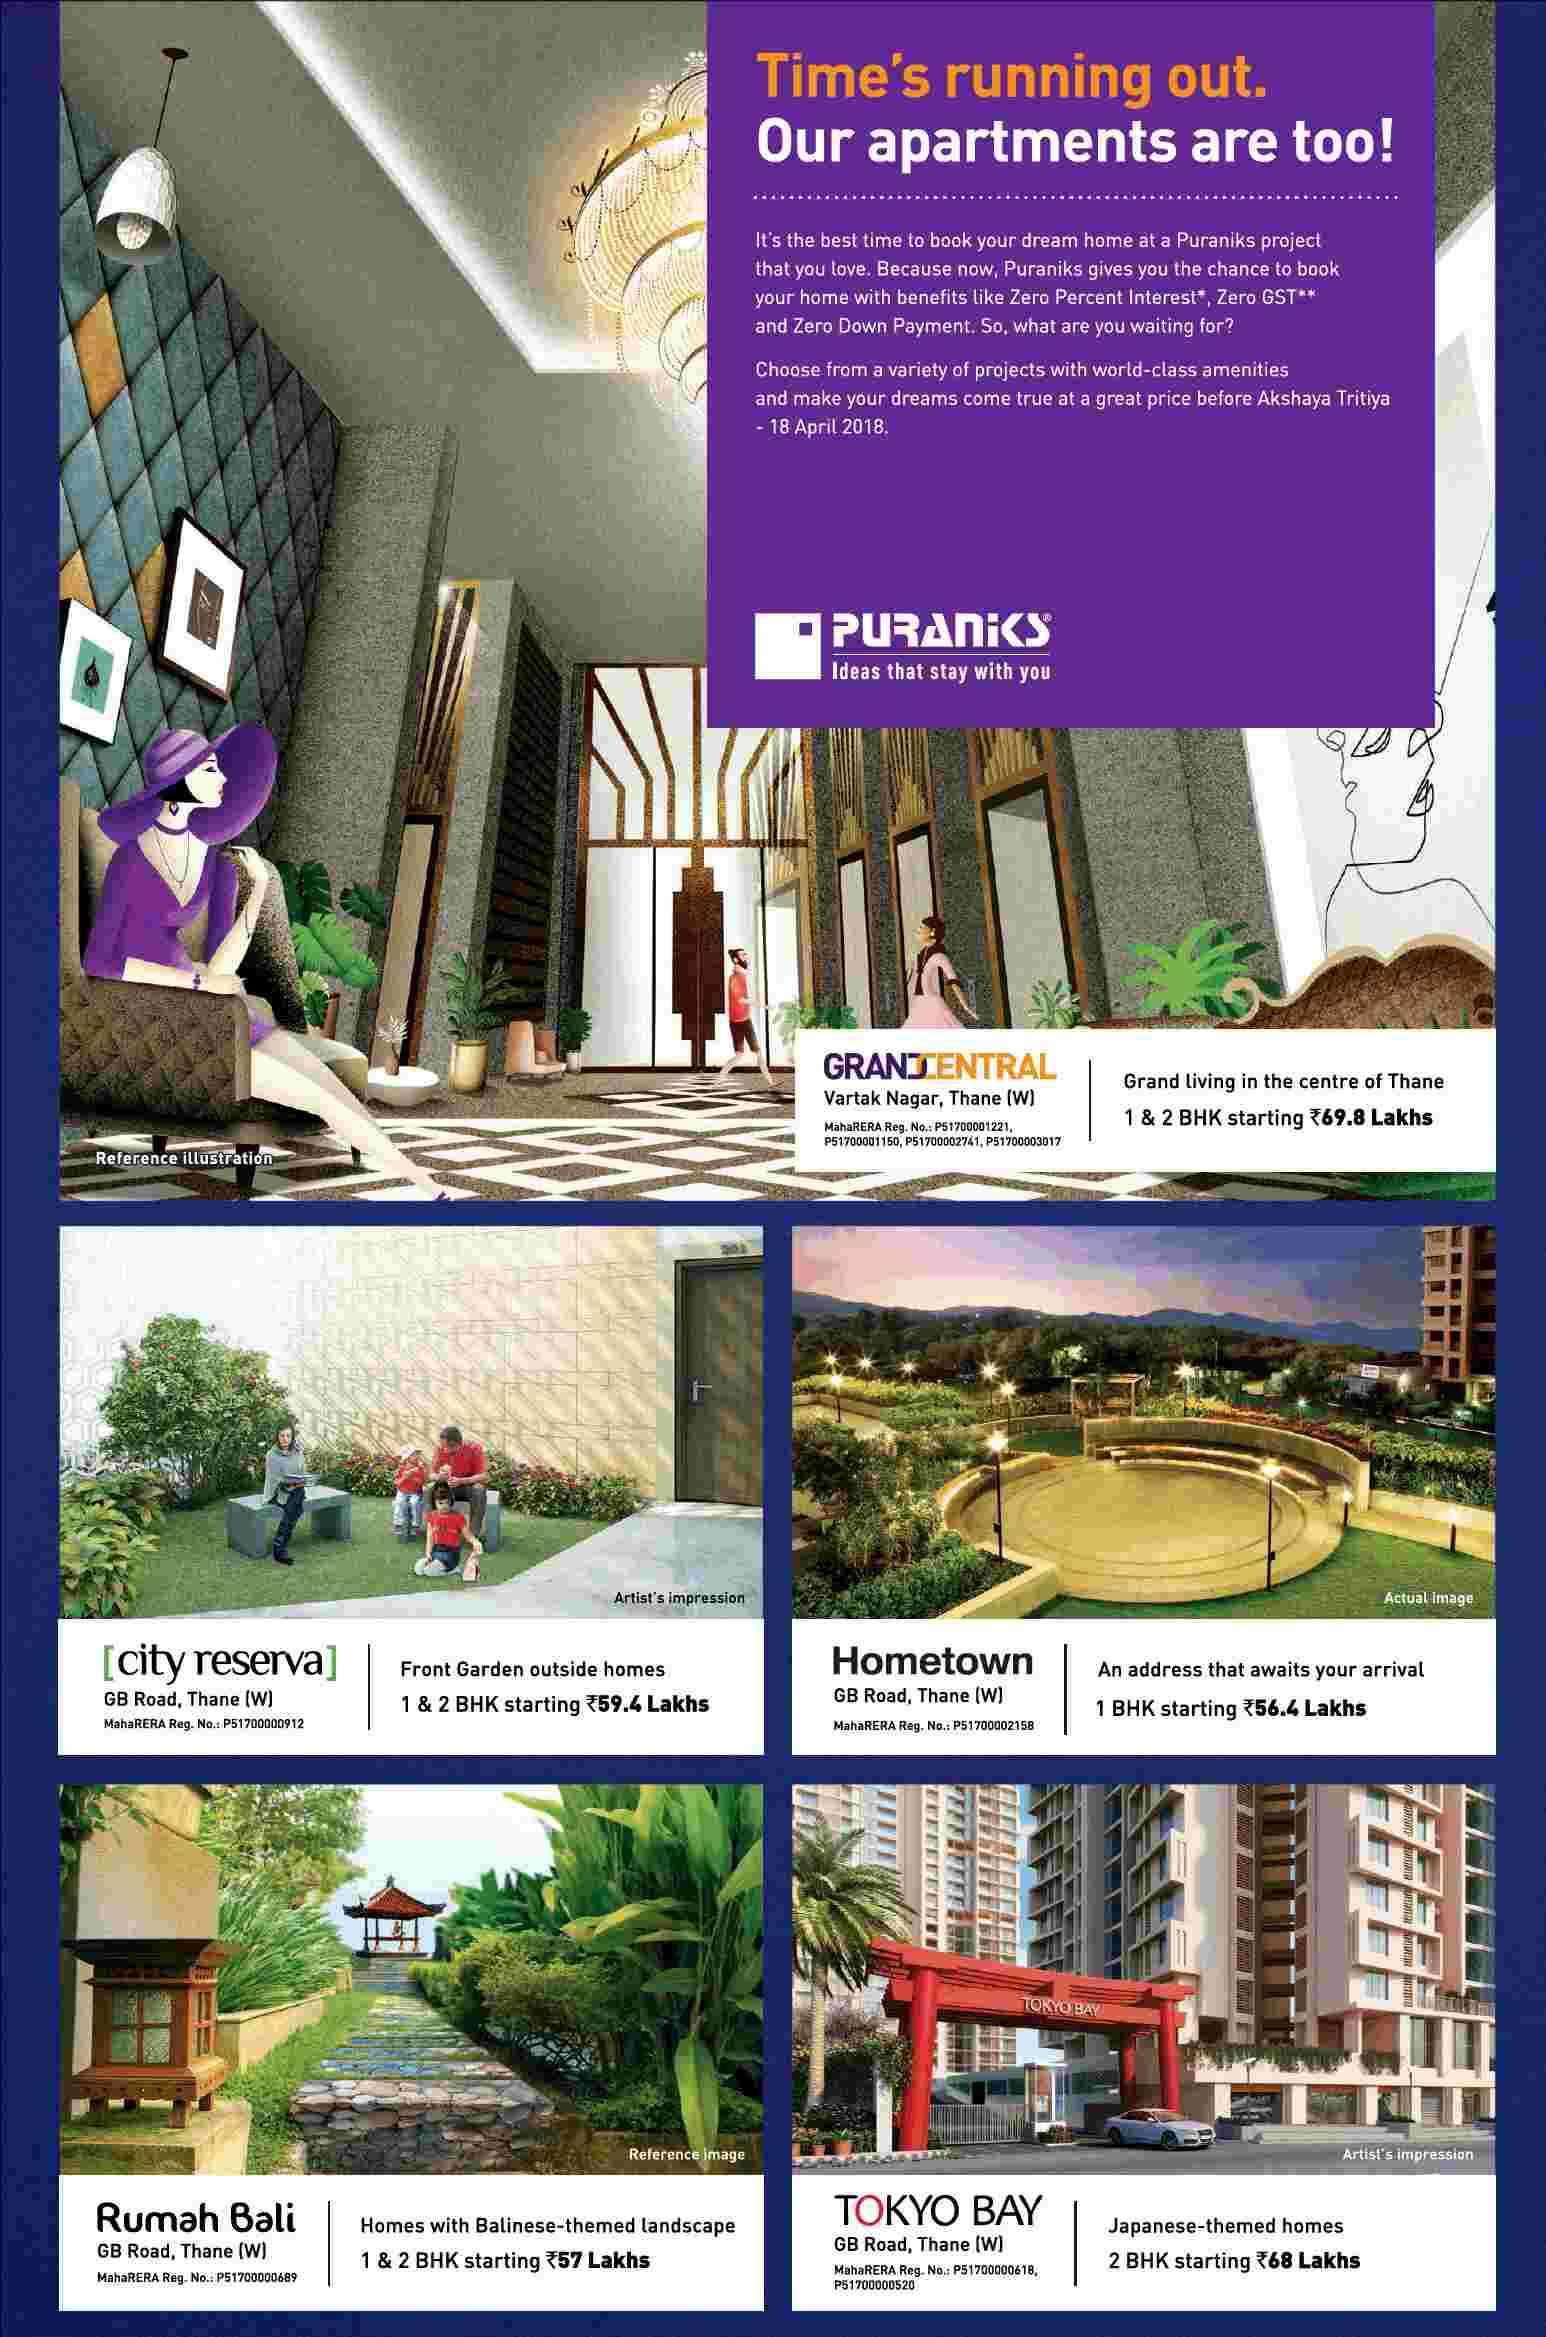 Book your home at a great price before Akshaya Tritiya at Puranik properties in Mumbai Update